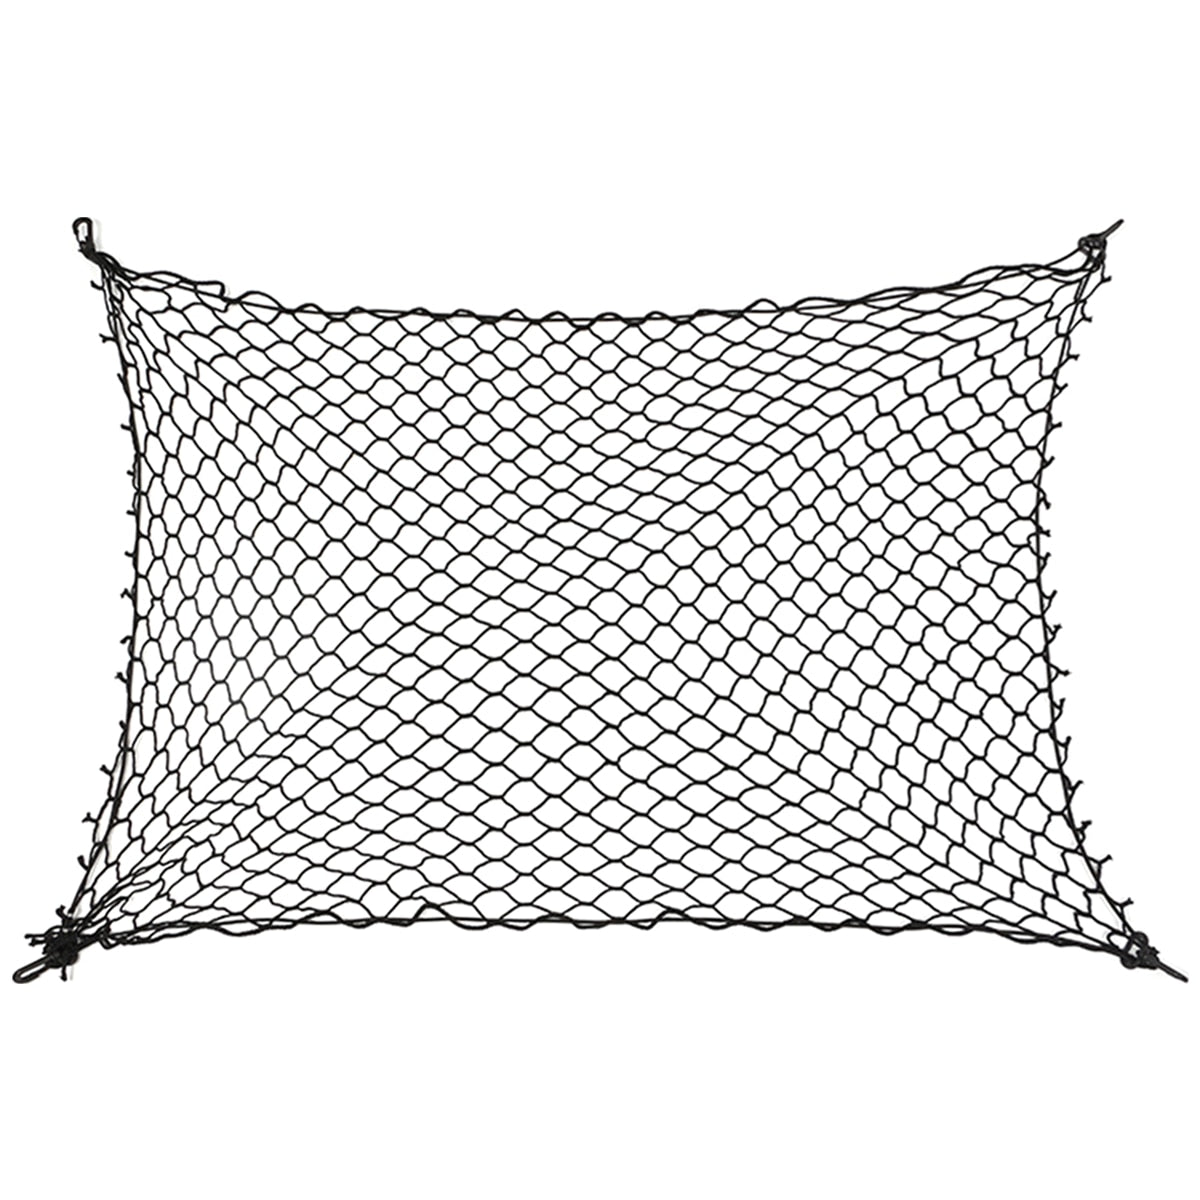 Dog Barrier Net